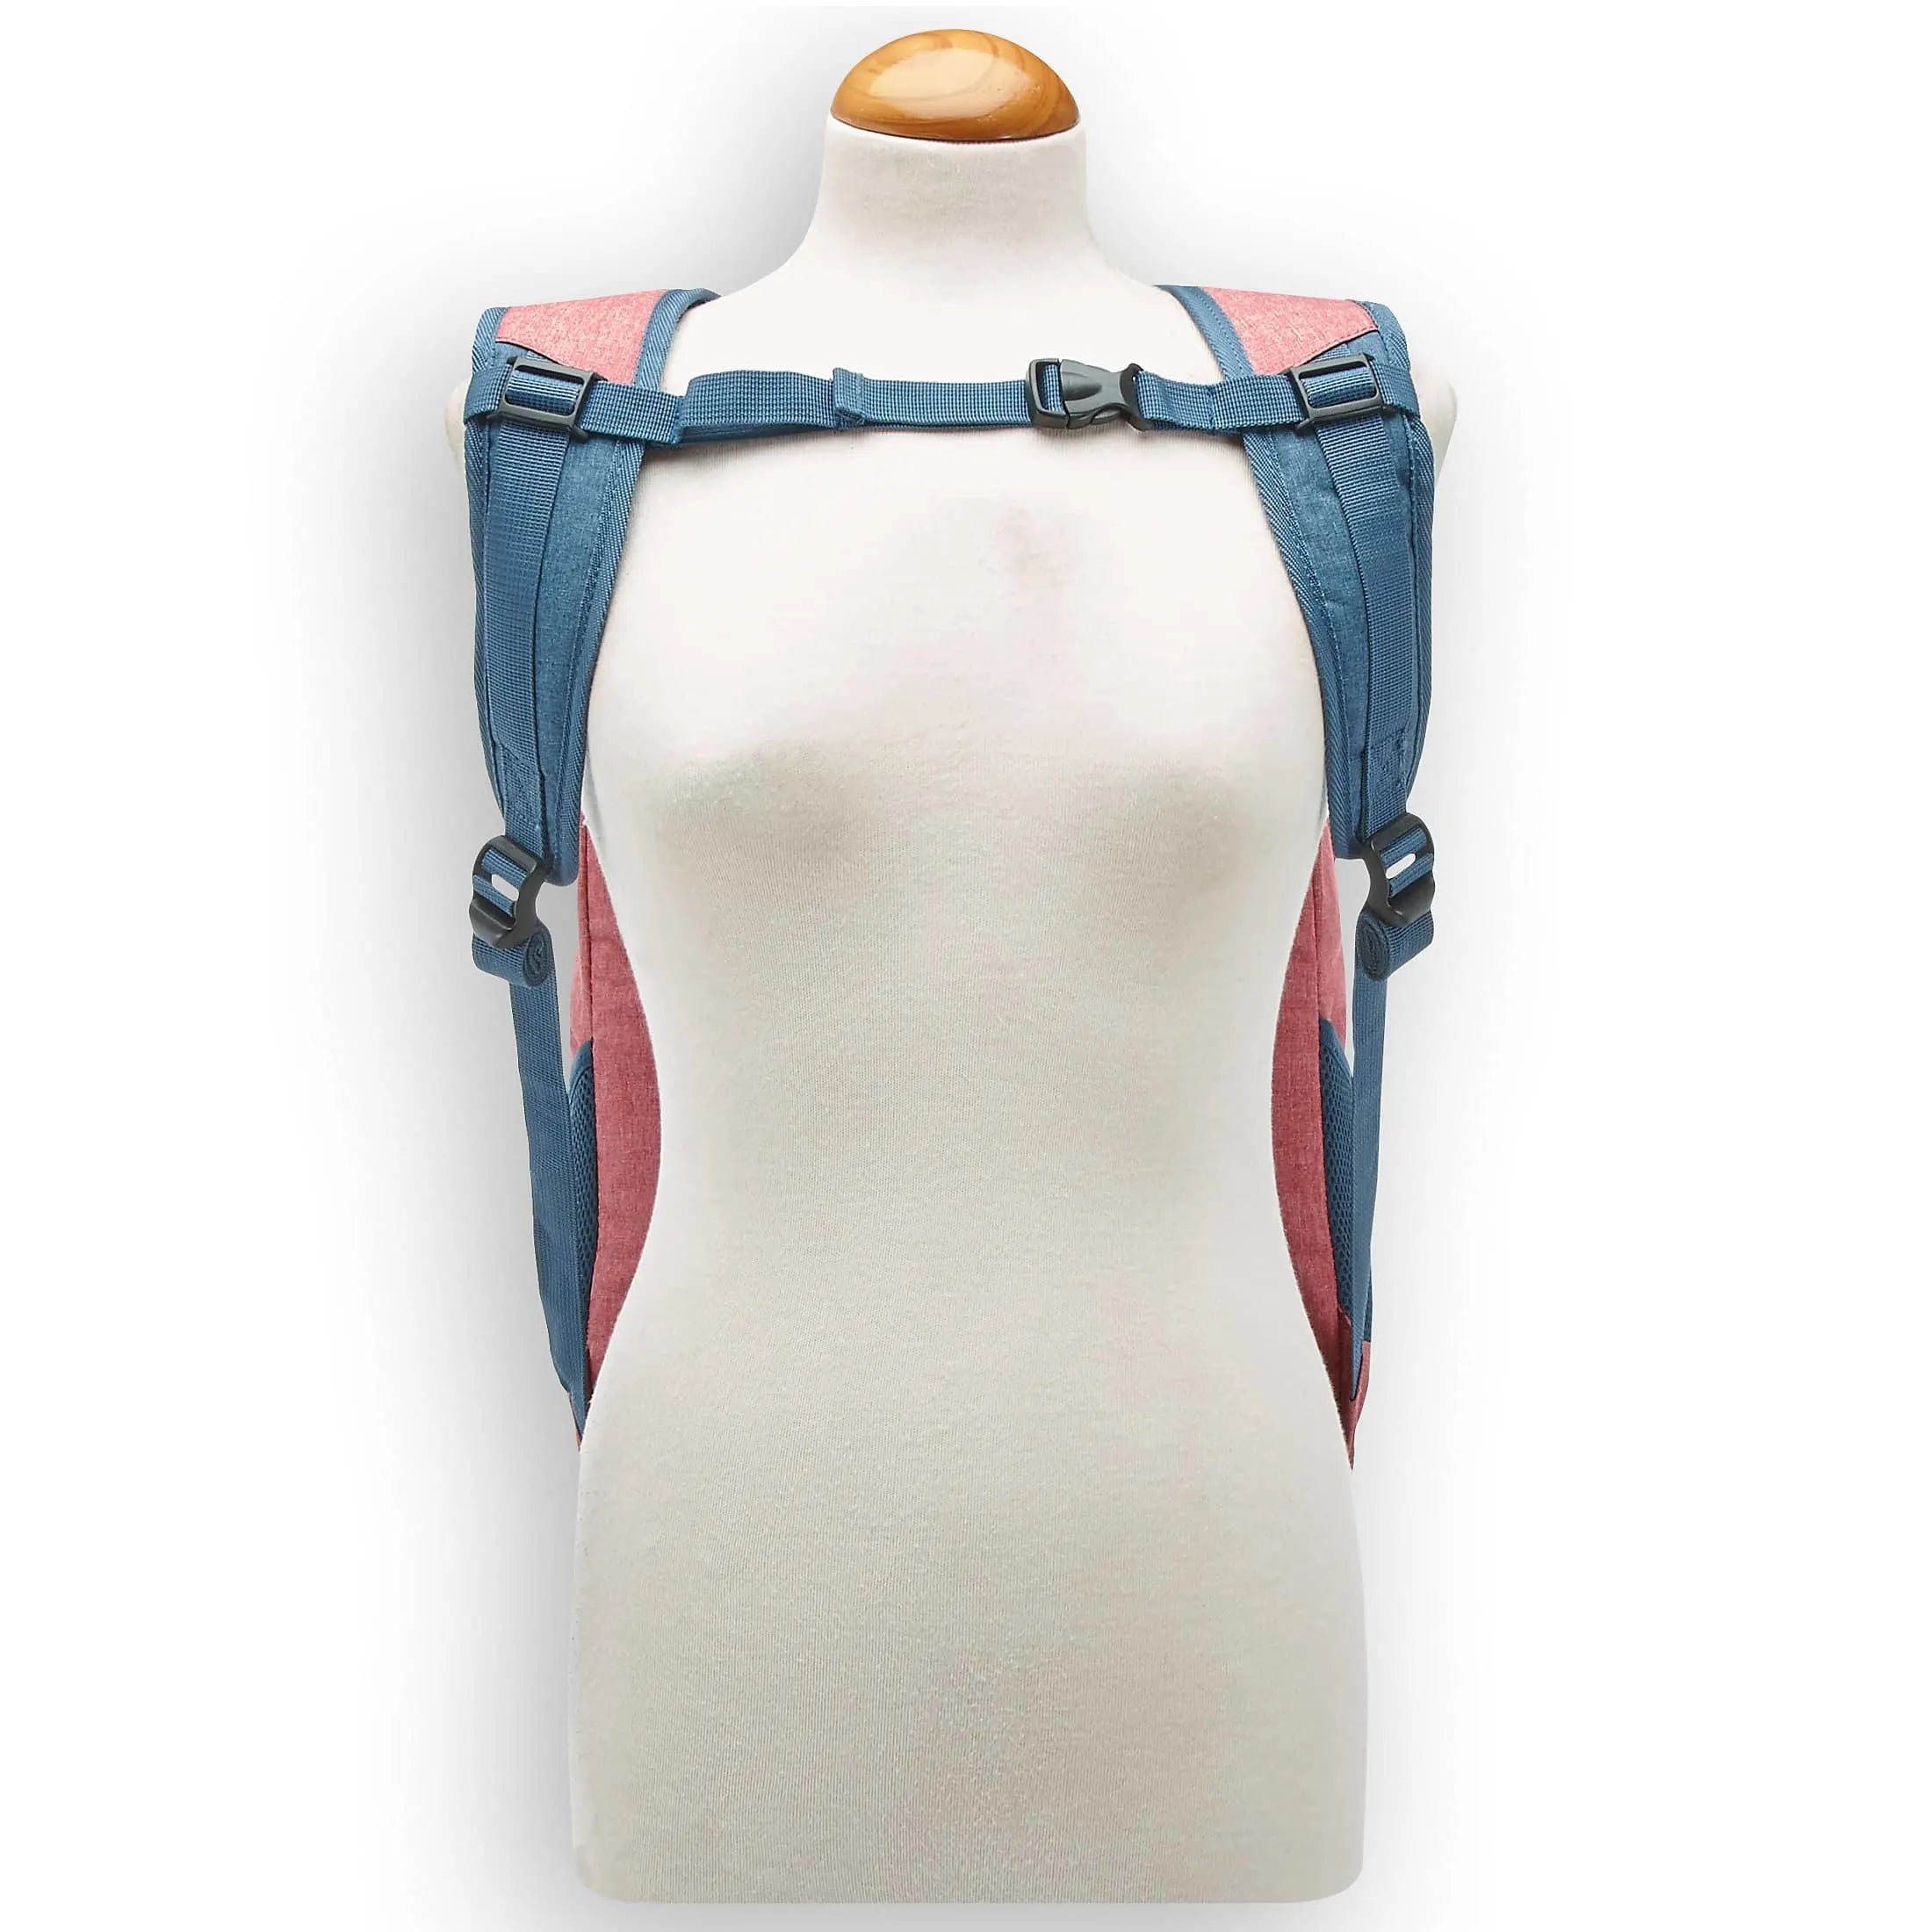 Travelite Basics Backpack Melagne 45 cm - navy-grey